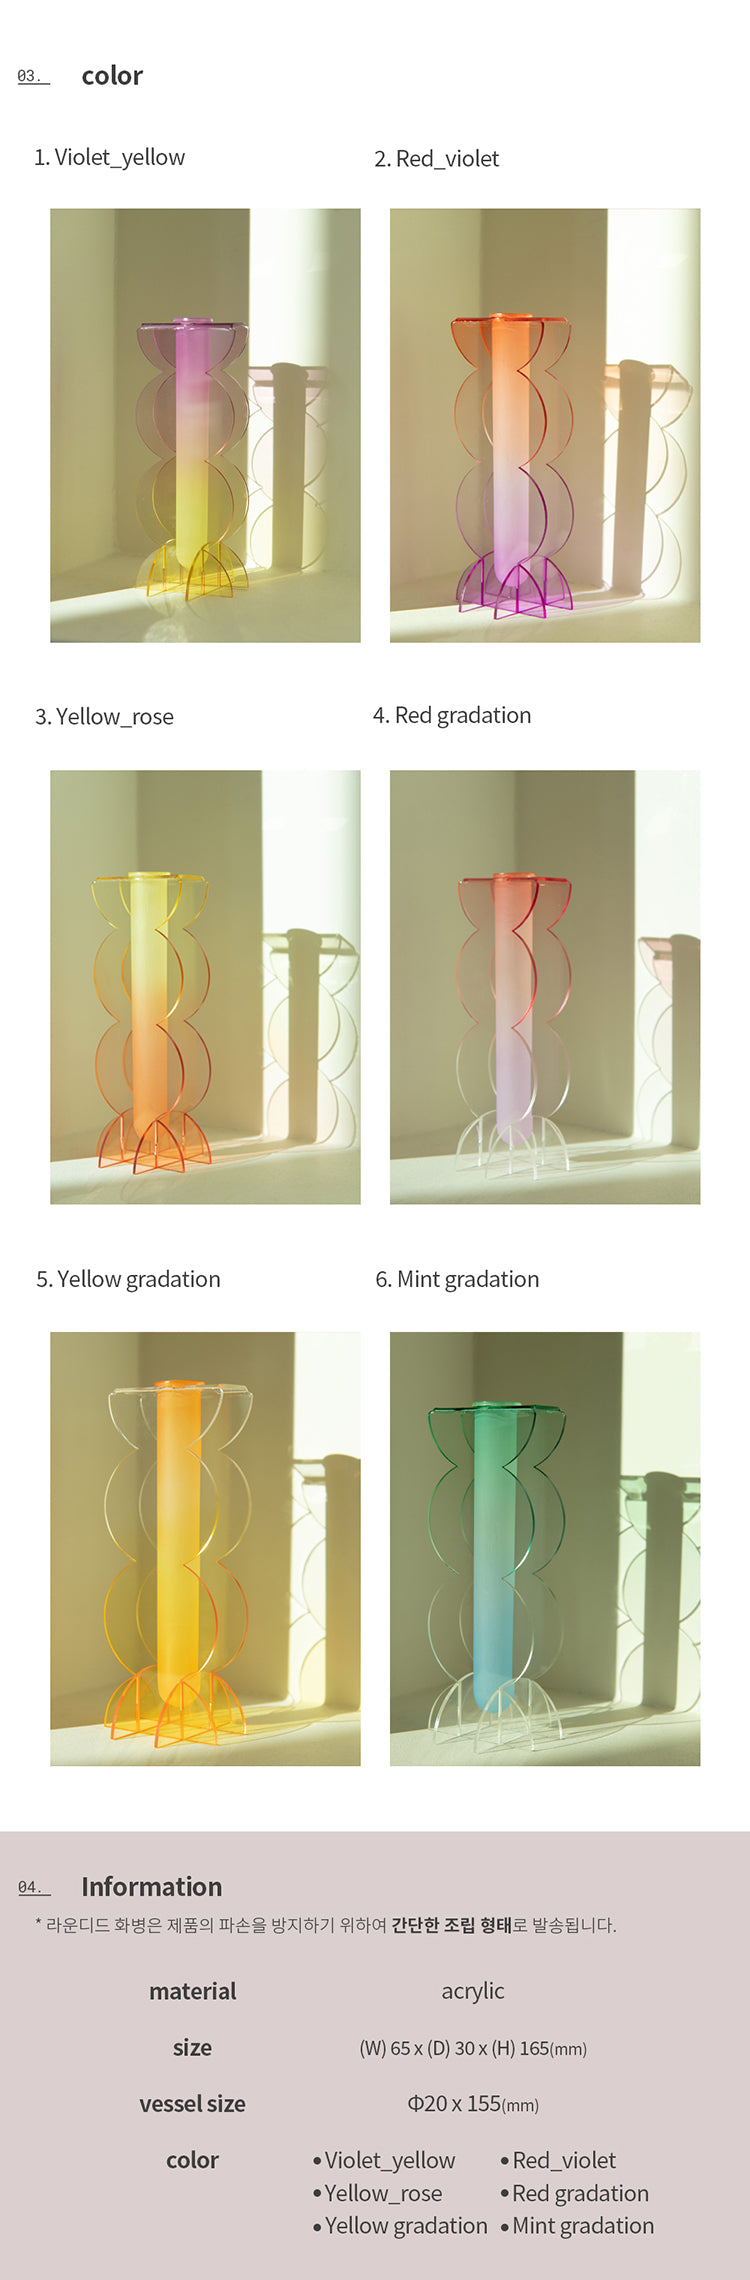 rounded M - acrylic vase